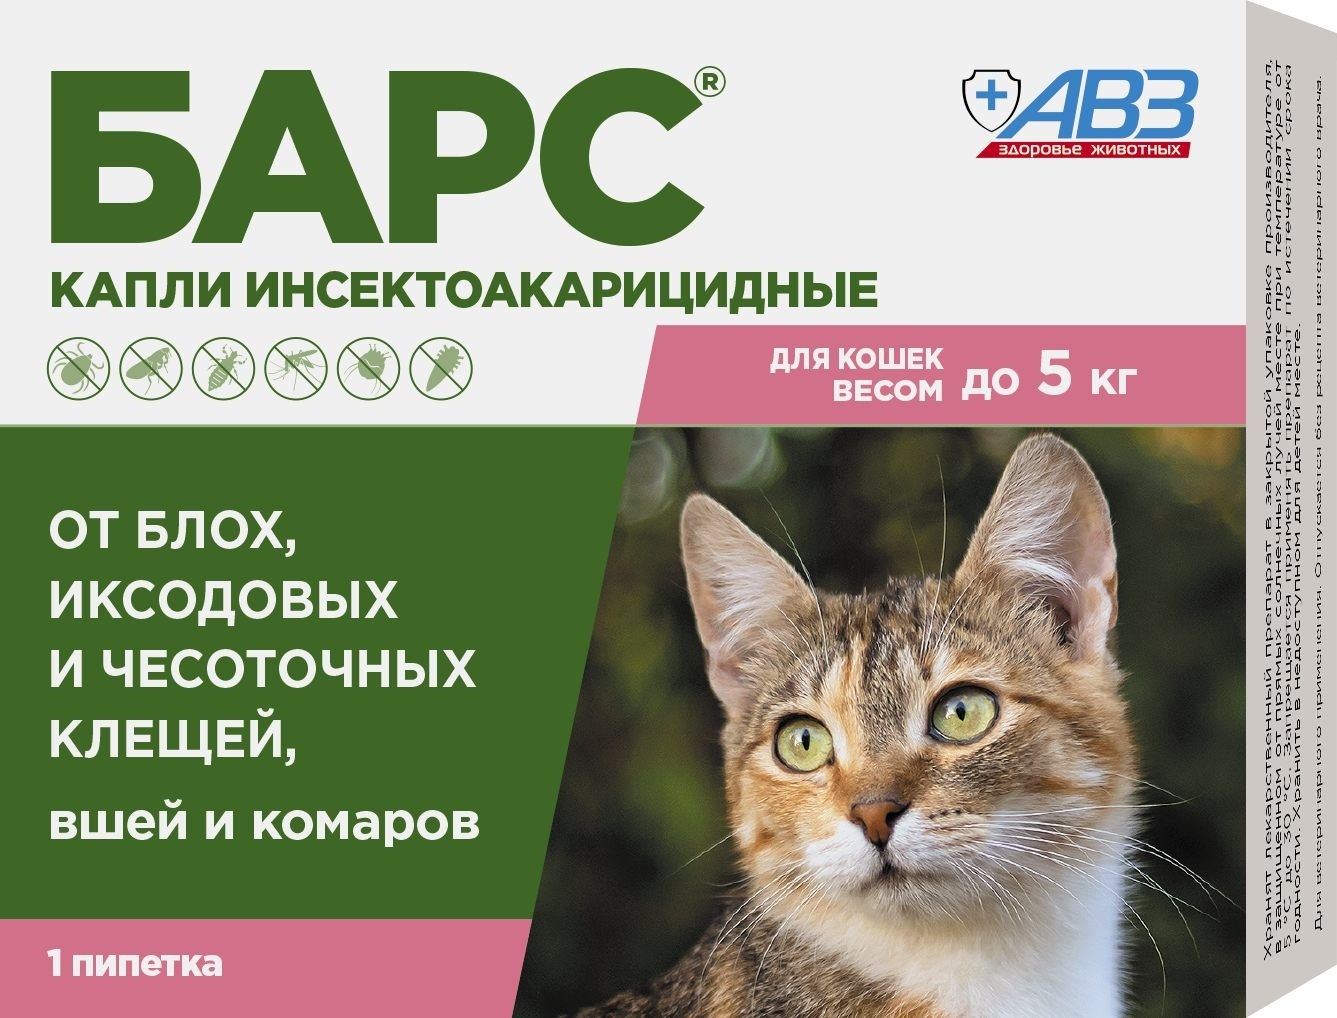 Агроветзащита бАРС капли инсектоакарицидные для кошек до 5 кг (1 пип. по 0,5 мл) (14 г) Агроветзащита бАРС капли инсектоакарицидные для кошек до 5 кг (1 пип. по 0,5 мл) (14 г) - фото 1